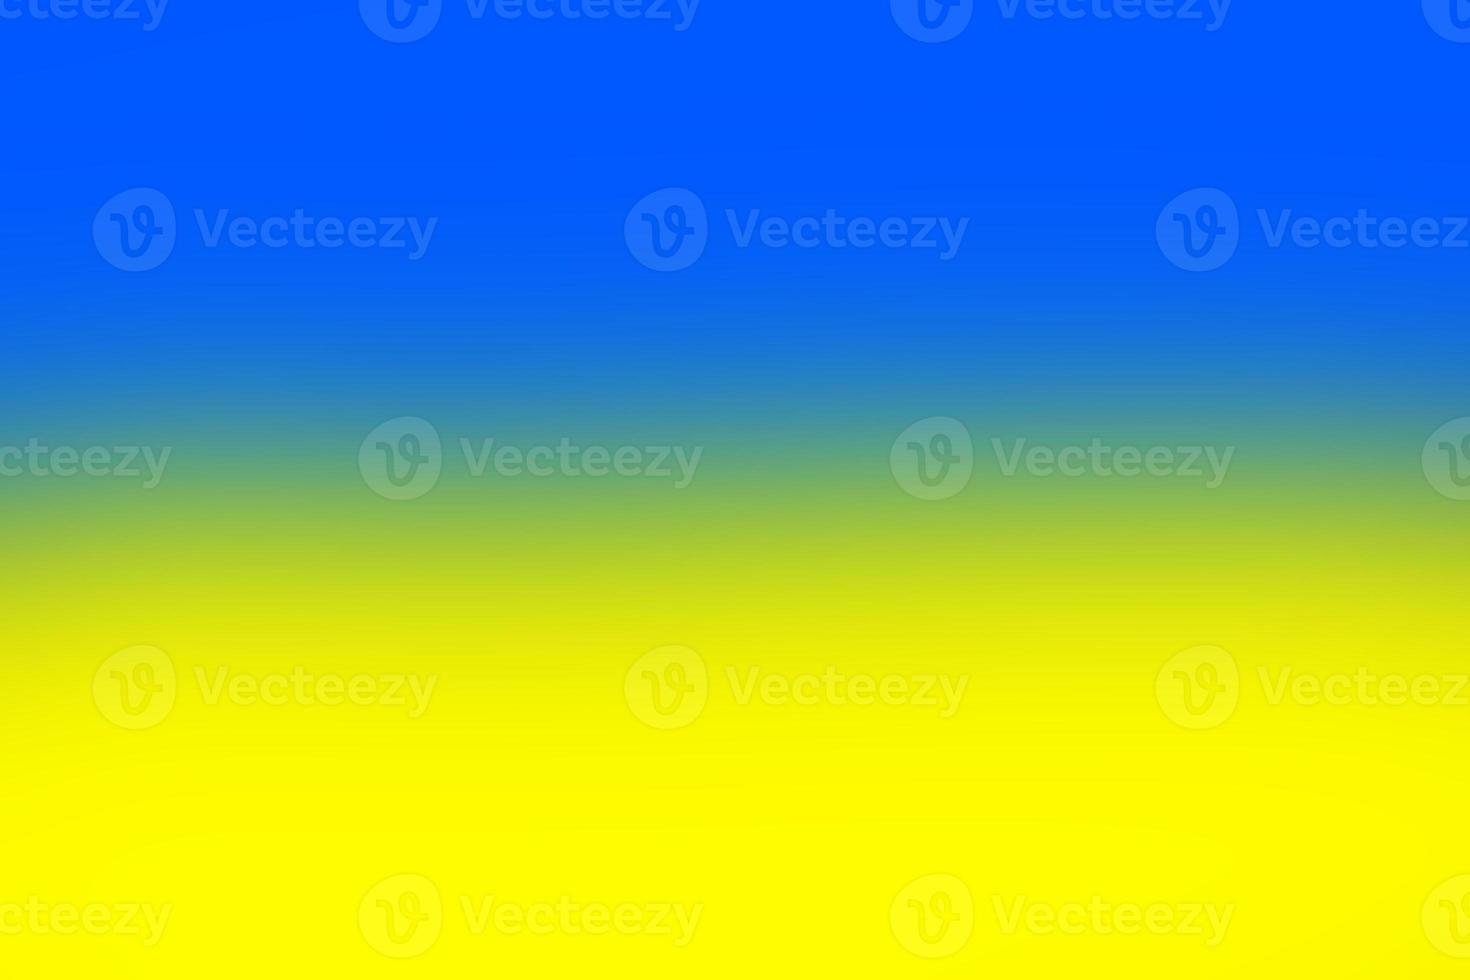 fondo azul amarillo colores de la bandera de ucrania foto